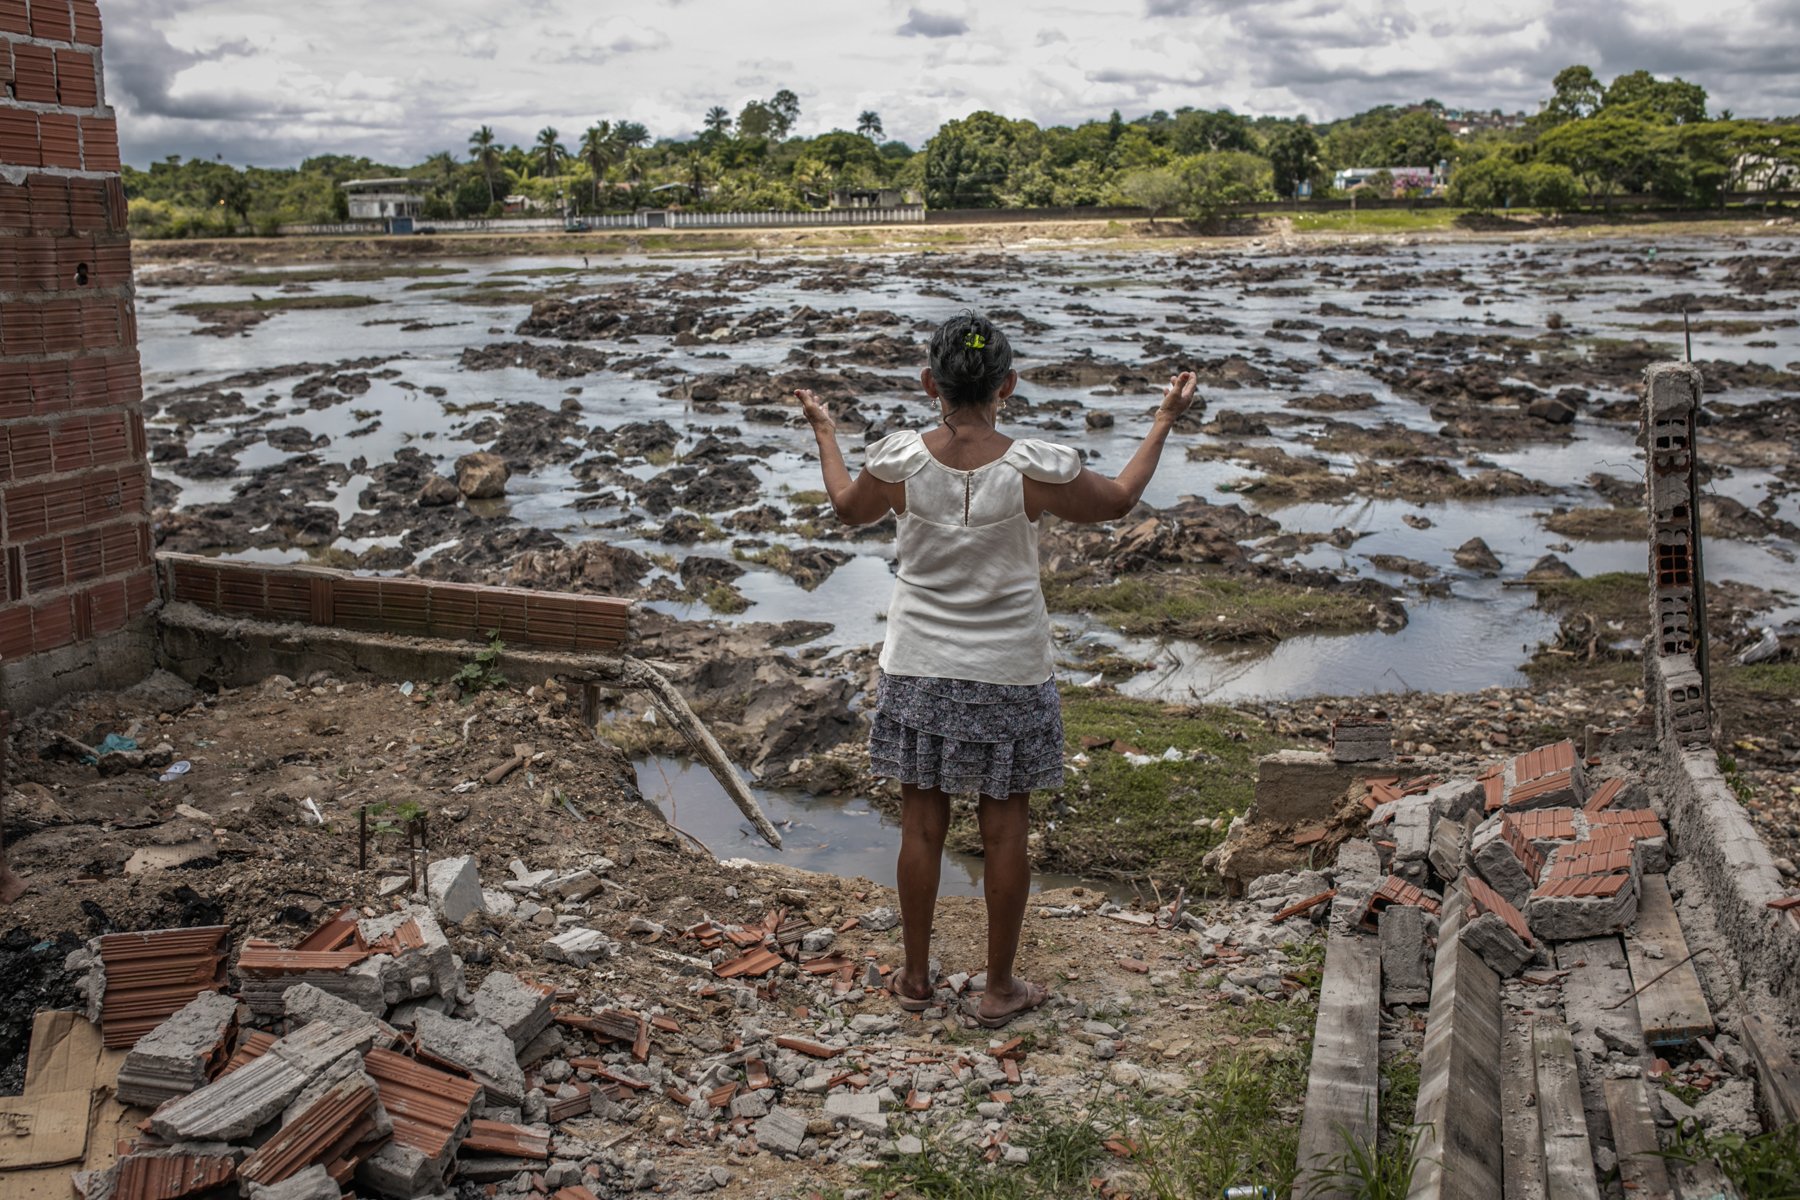 Saiba como ajudar as vítimas das enchentes na Bahia, Minas Gerais e outros estados